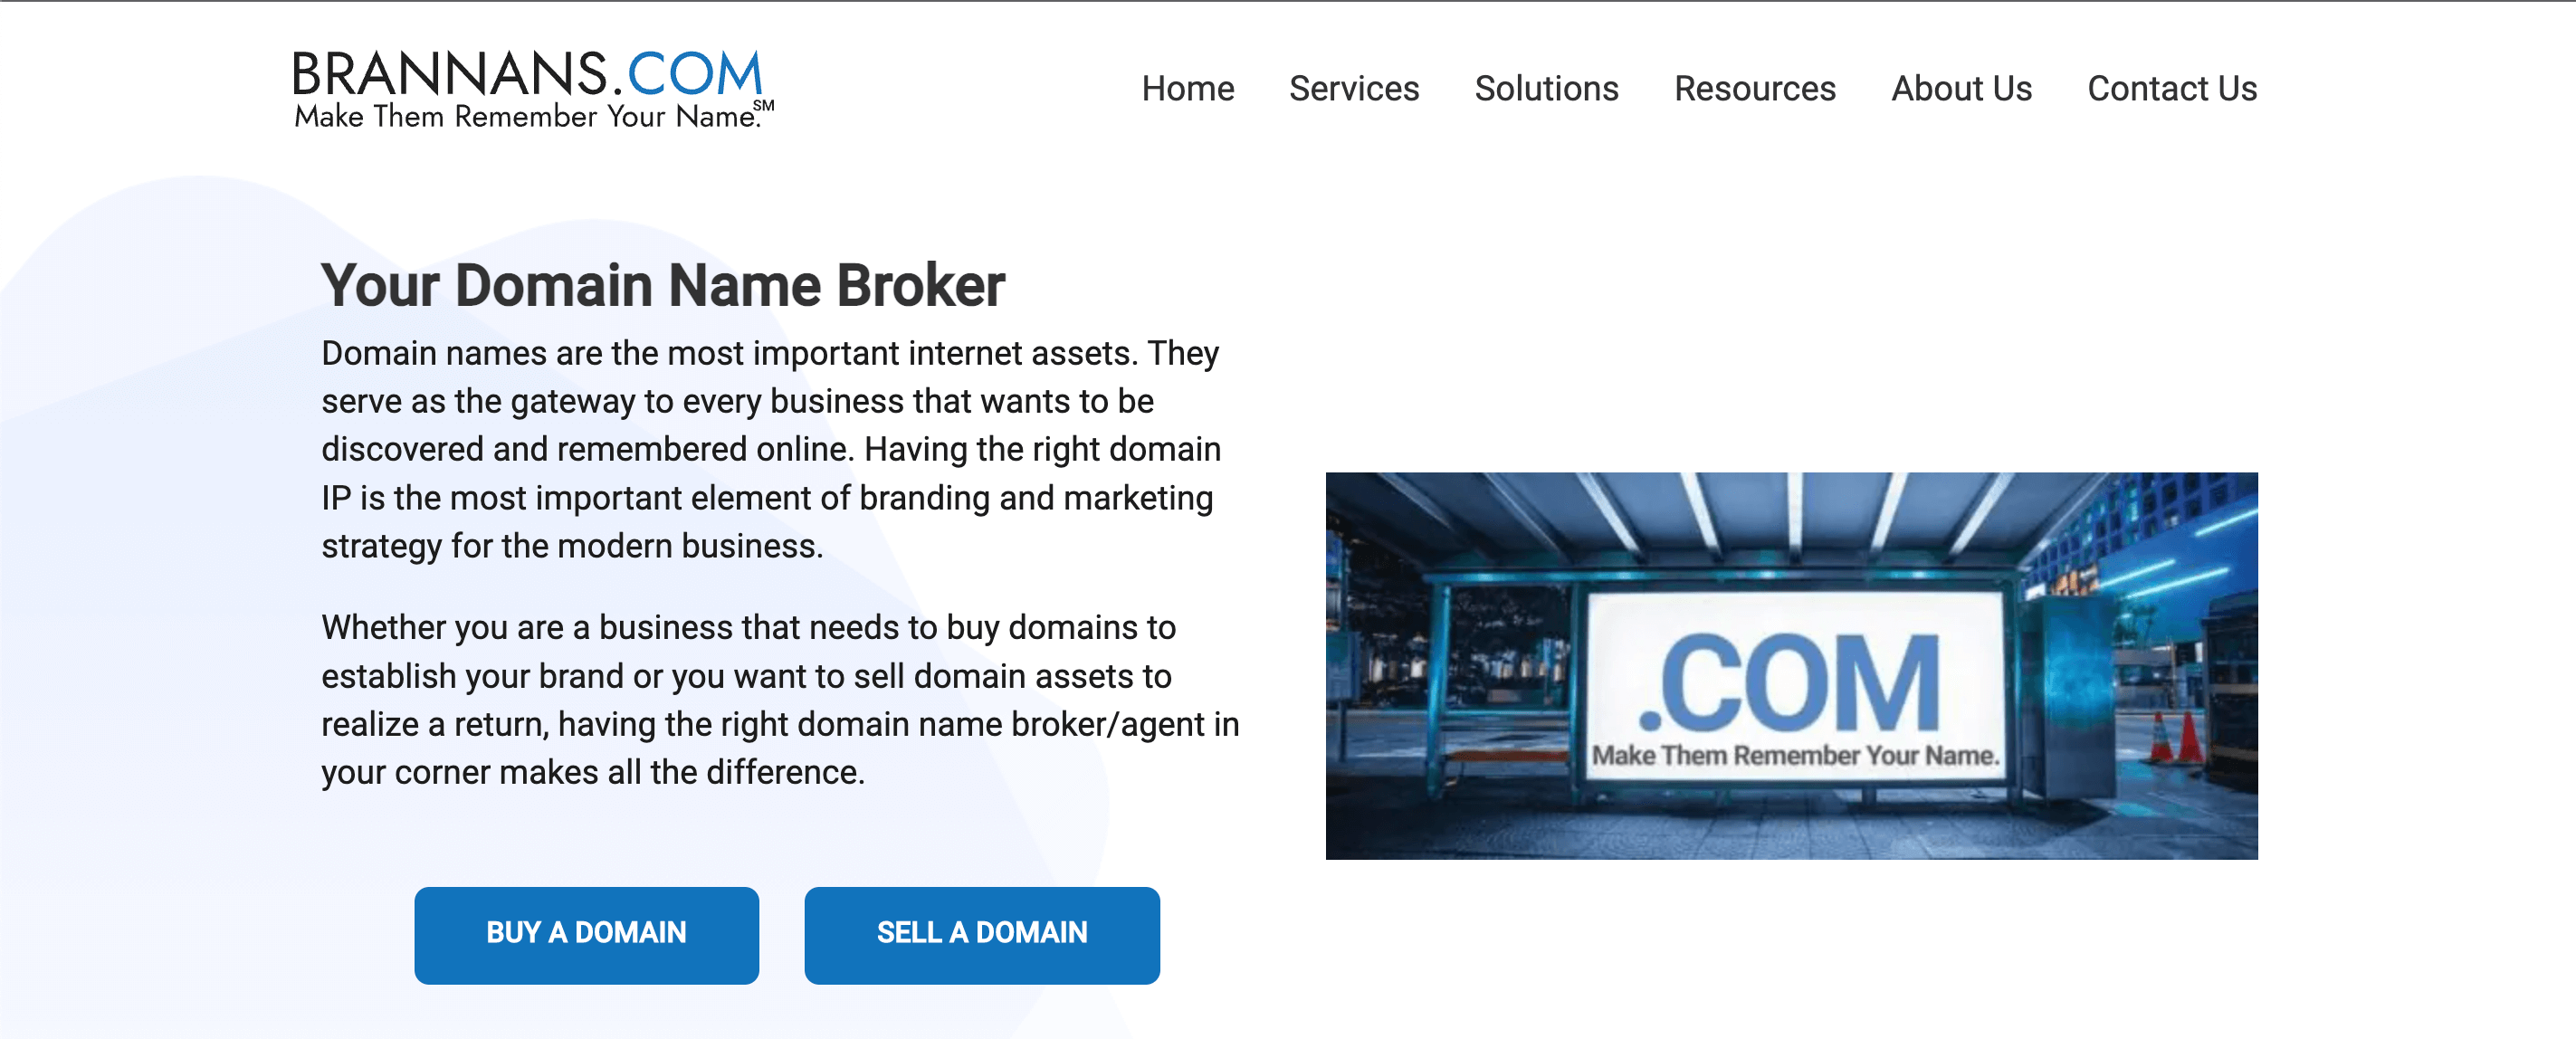 Brannans brokerage's home page